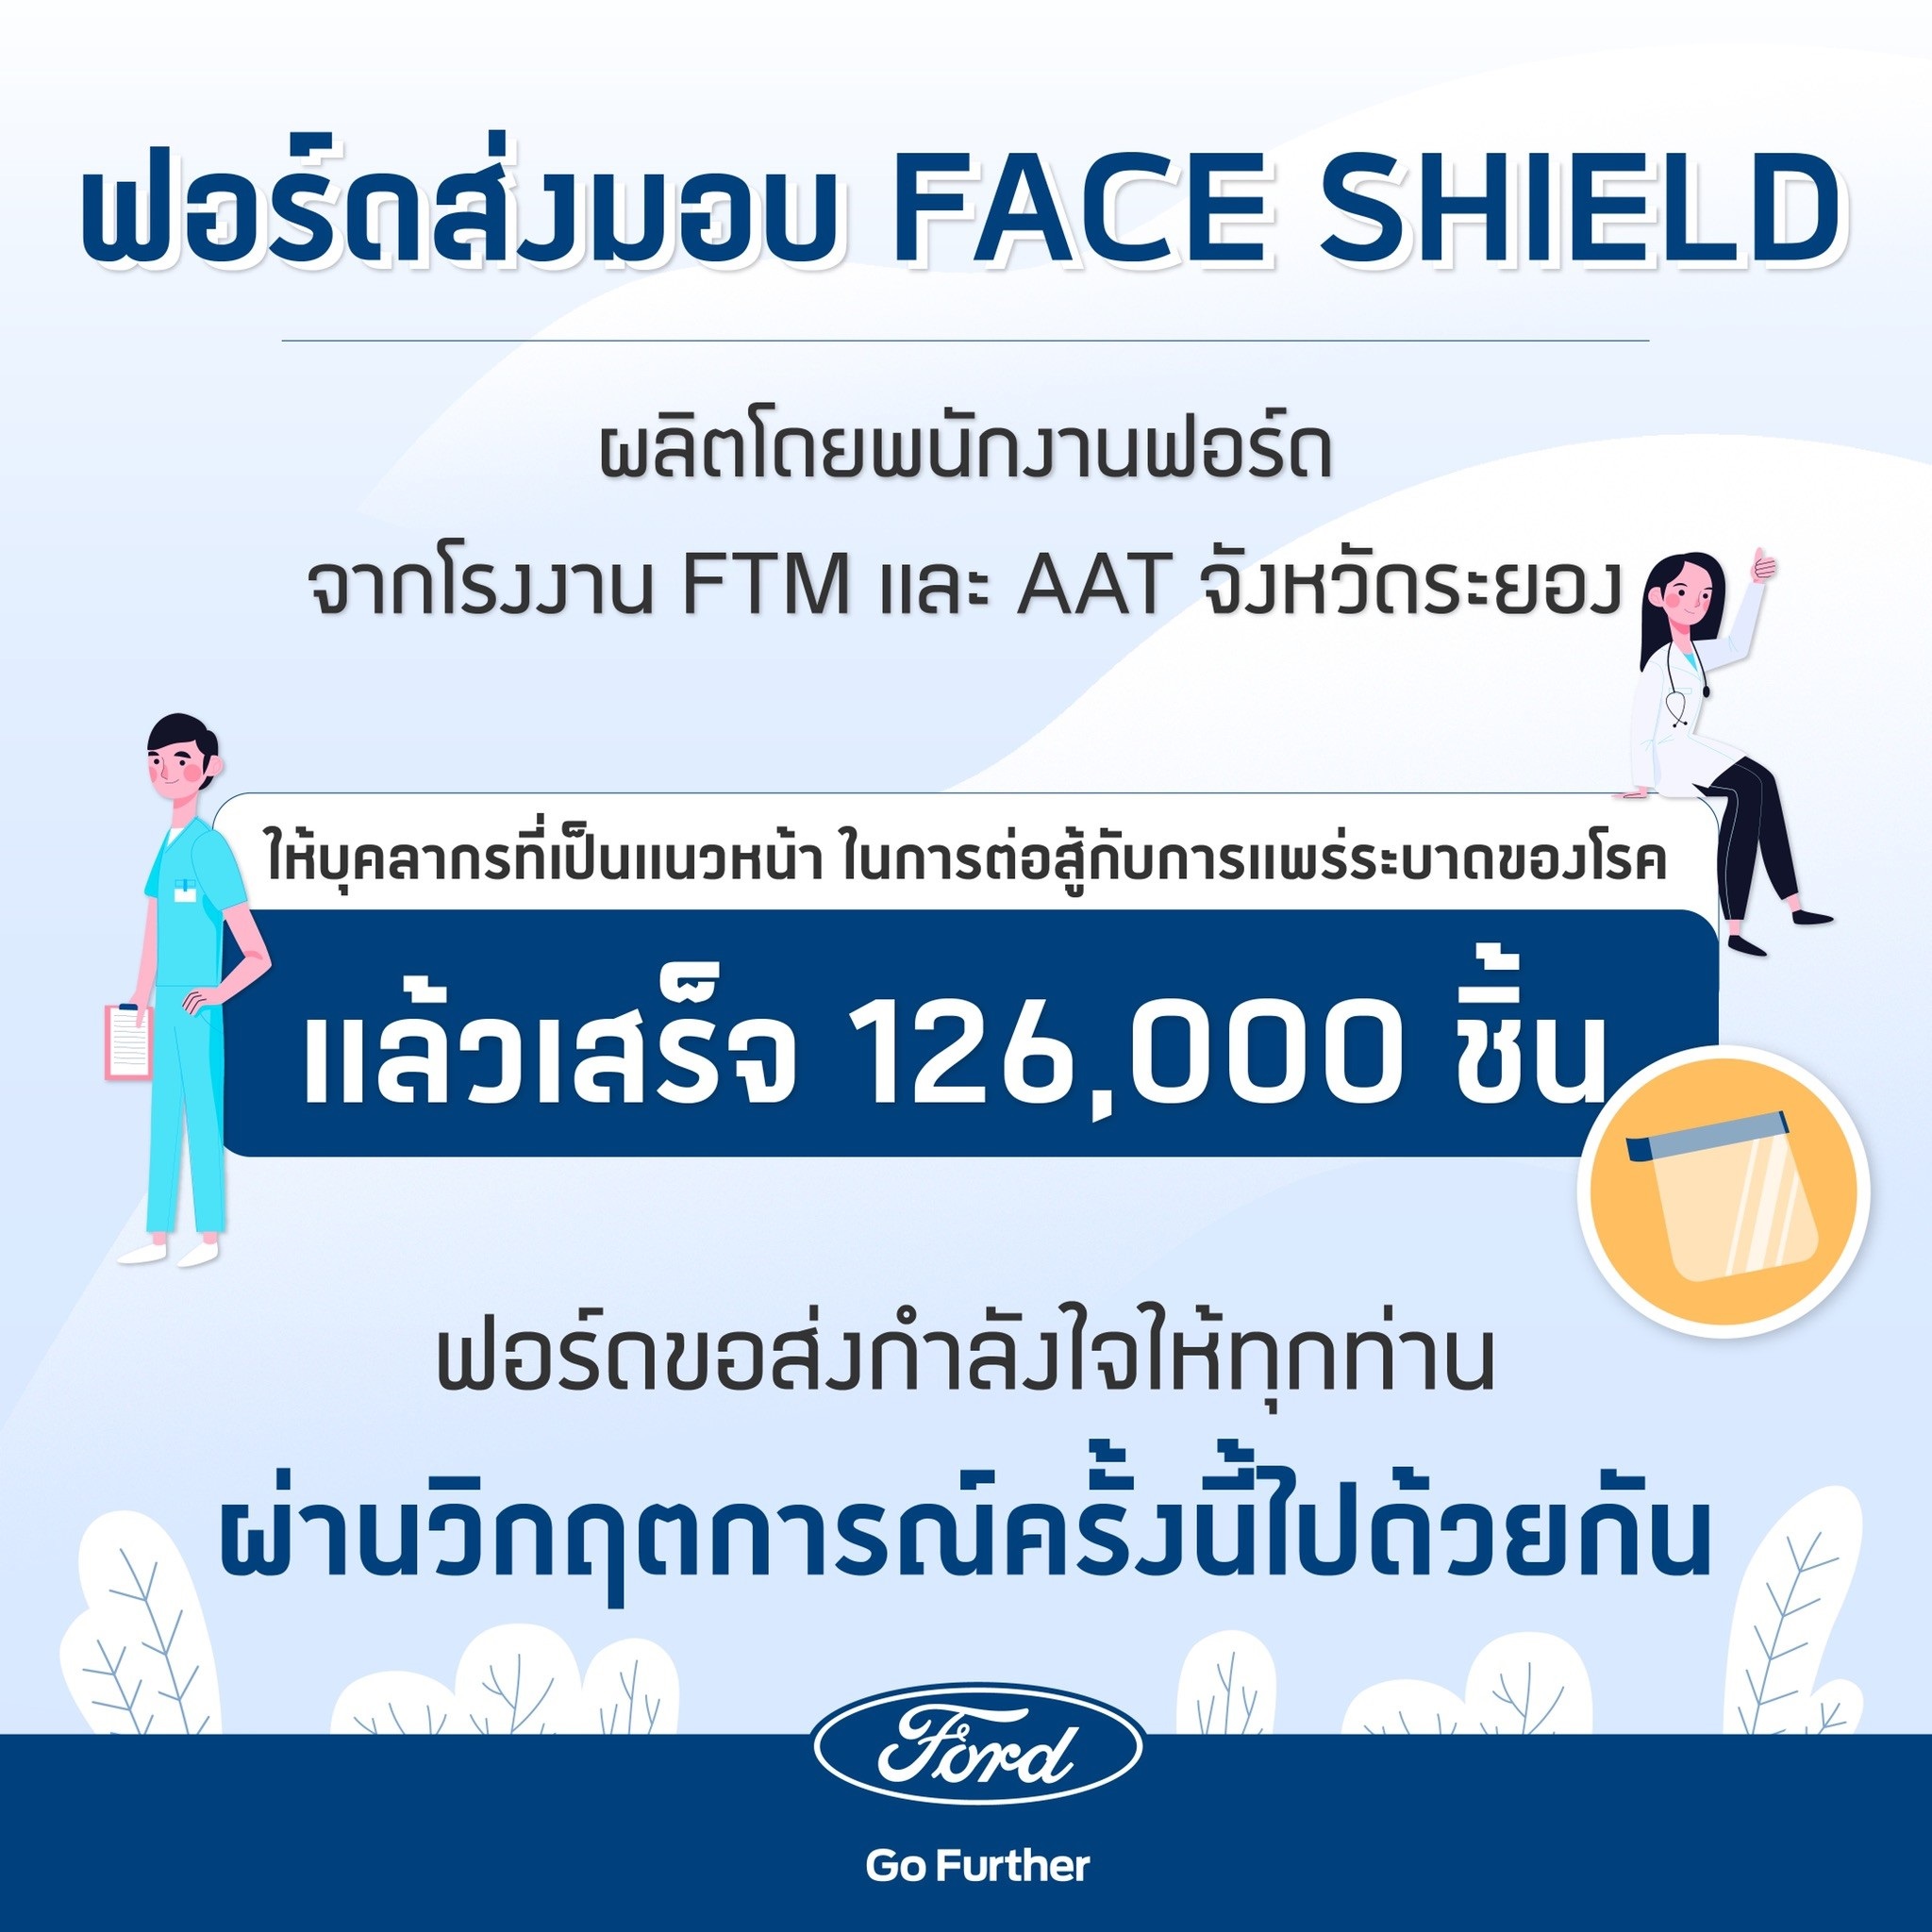 ฟอร์ด ส่งมอบหน้ากากป้องกันใบหน้าเพื่อรับมือโควิด-19 ให้บุคลากรทางการแพทย์และหน่วยงานต่างๆ แล้วเสร็จ 126,000 ชิ้น